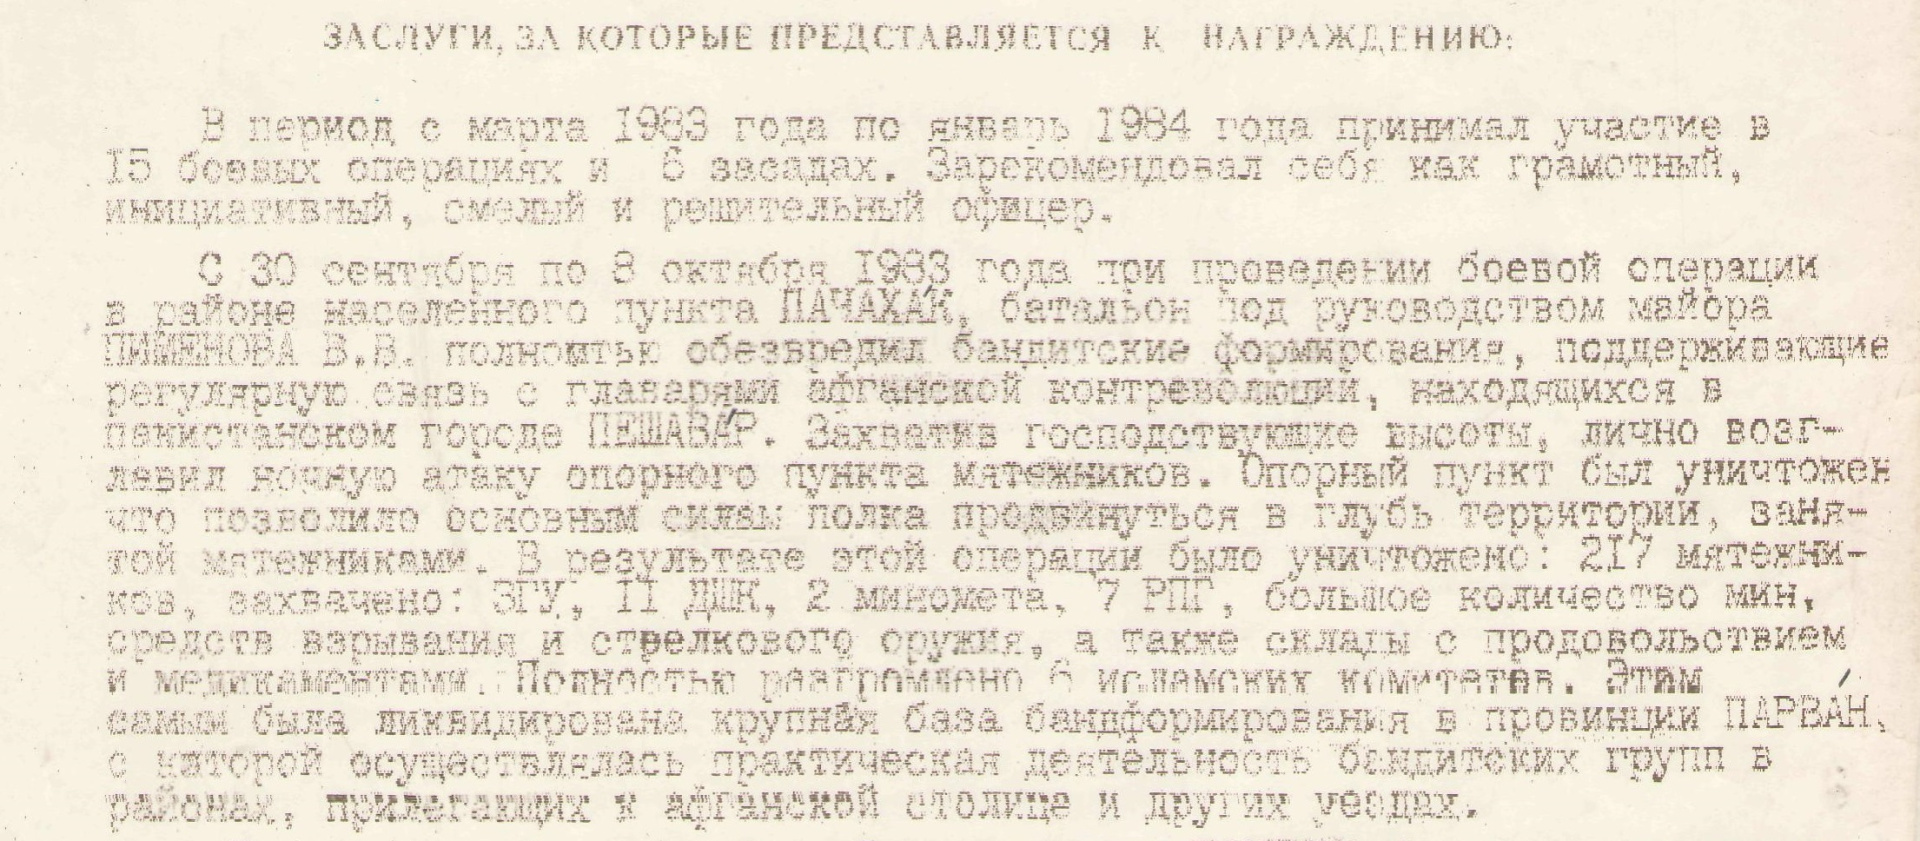 2 - ГСС В.В. Пименов (наградной лист).jpg